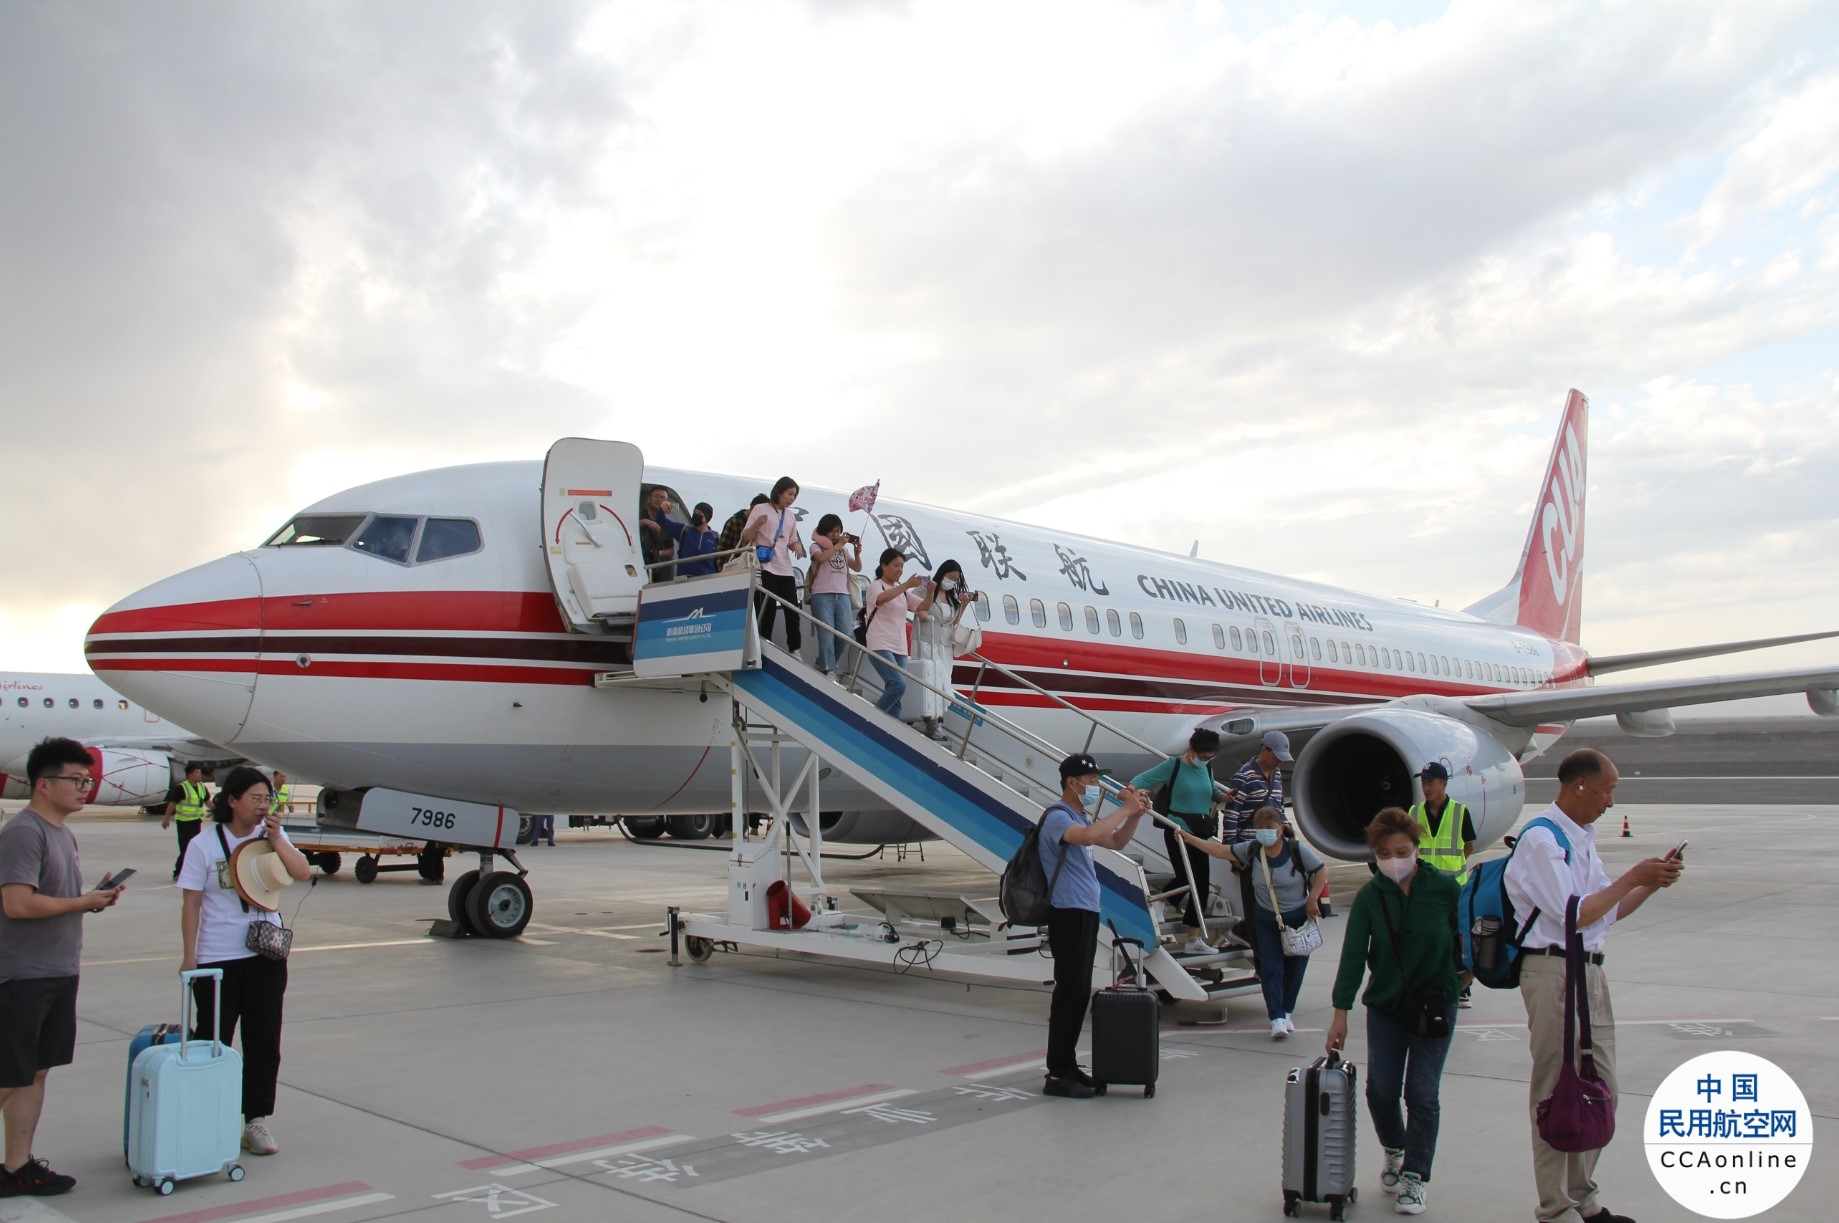 吐鲁番机场恢复“北京-吐鲁番”旅游包机往返航线